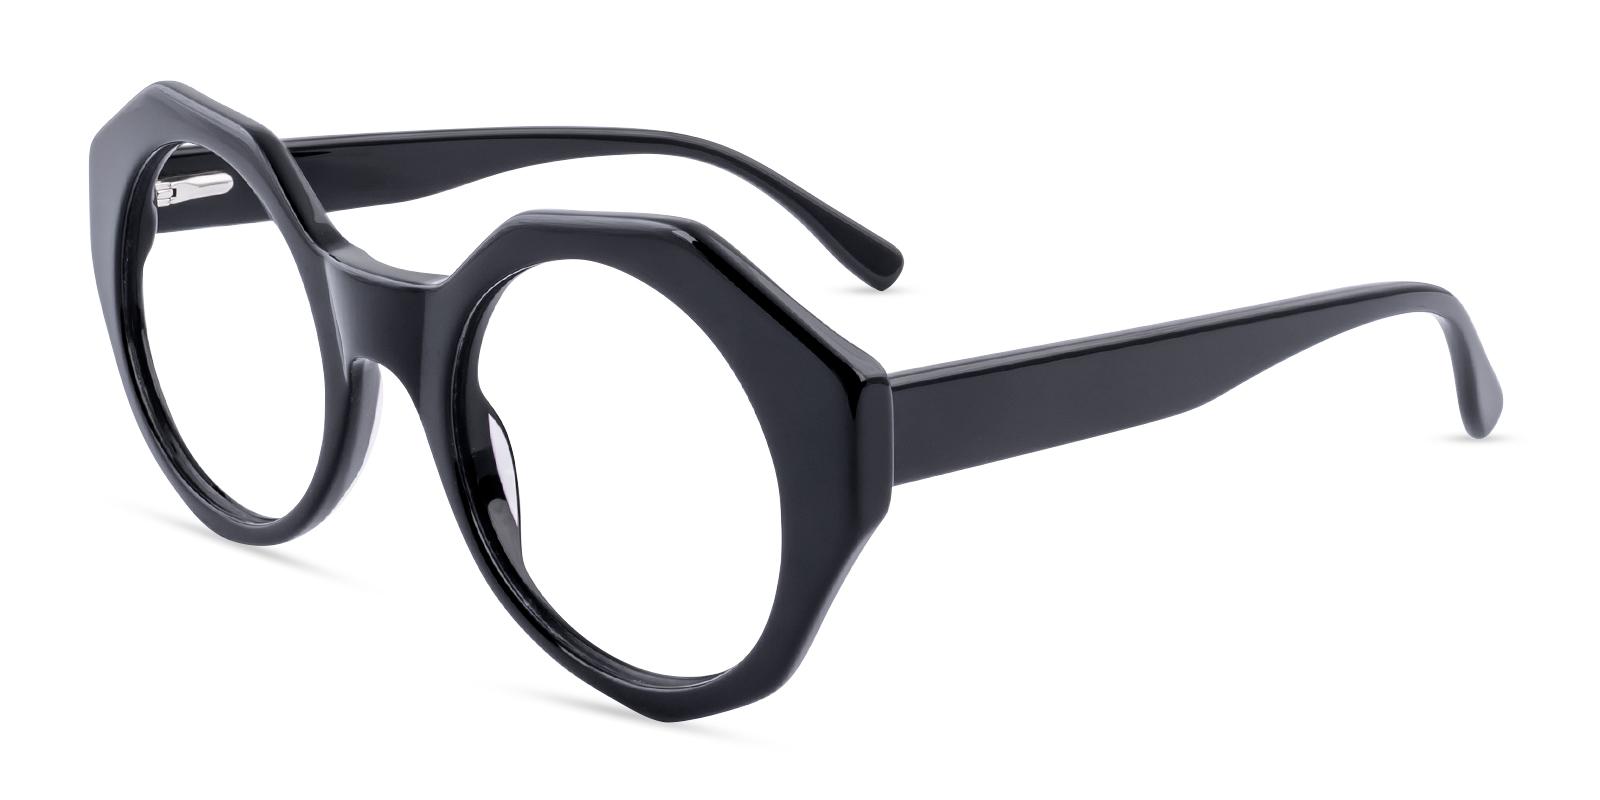 Chromette Black Acetate Eyeglasses , SpringHinges , UniversalBridgeFit Frames from ABBE Glasses